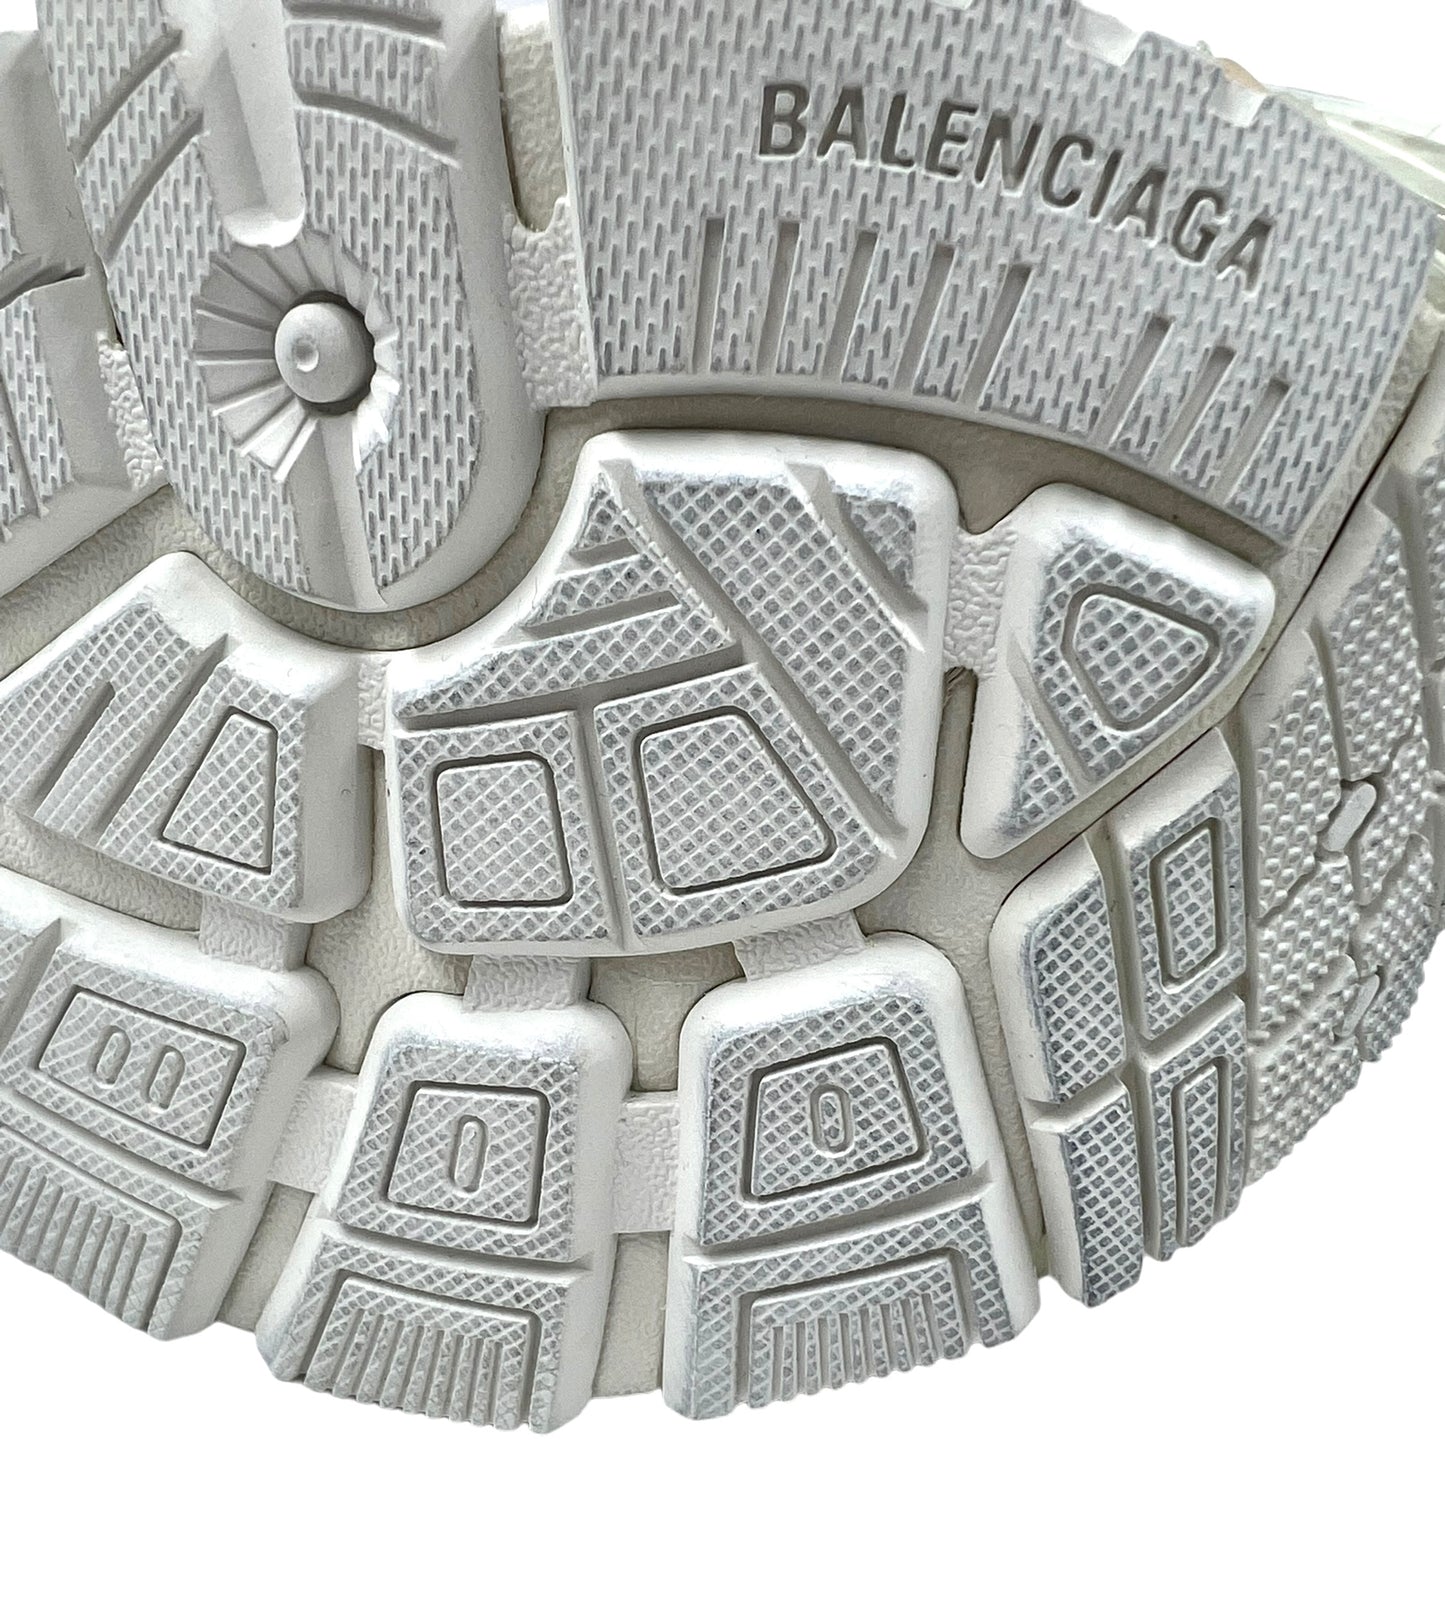 Balenciaga Women's Size 41 Bicolor Fluo Runner Sneakers